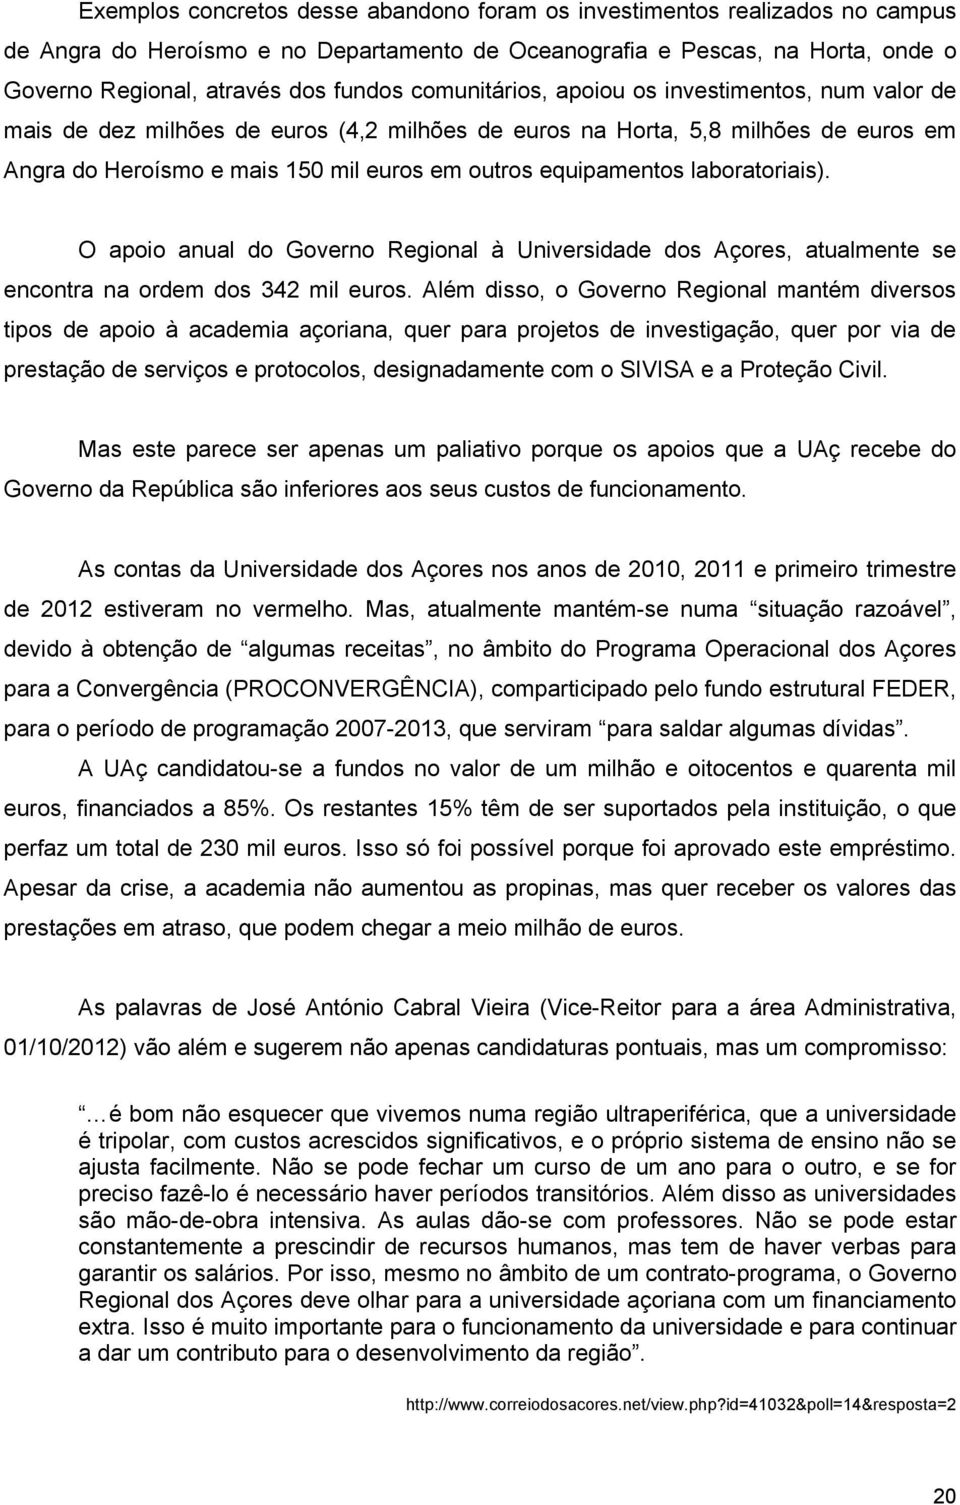 laboratoriais). O apoio anual do Governo Regional à Universidade dos Açores, atualmente se encontra na ordem dos 342 mil euros.